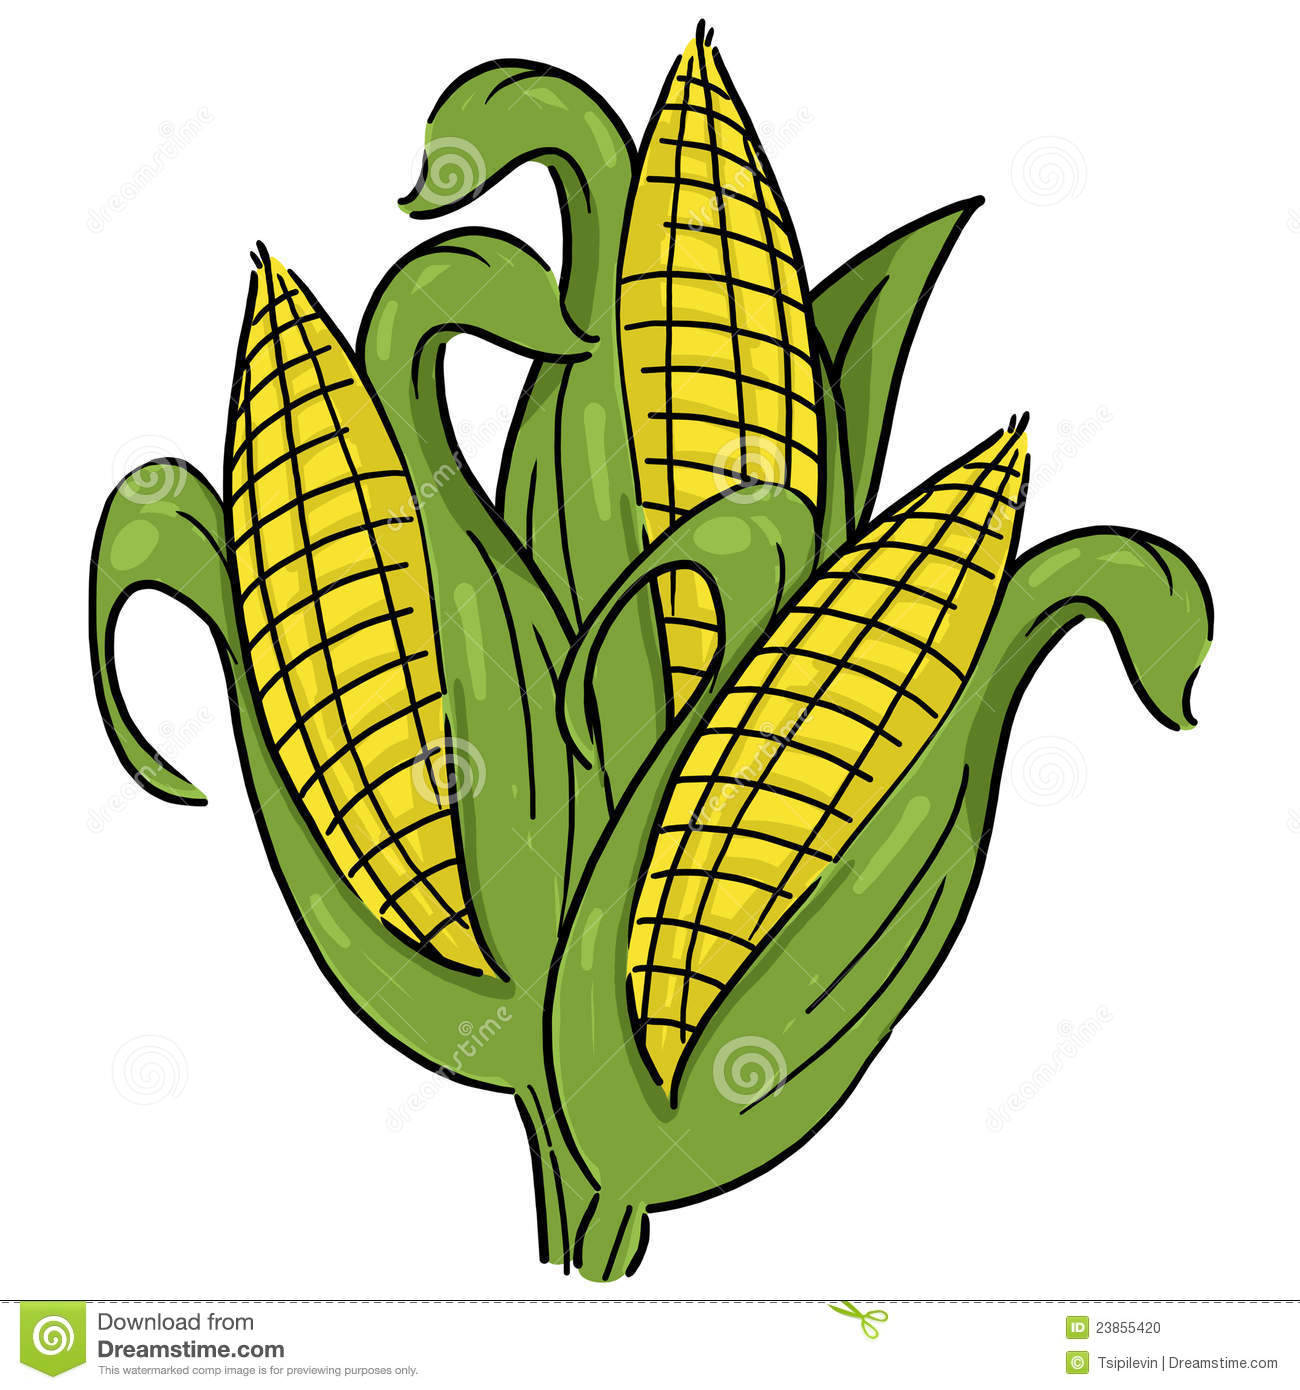 crops clipart cornfield